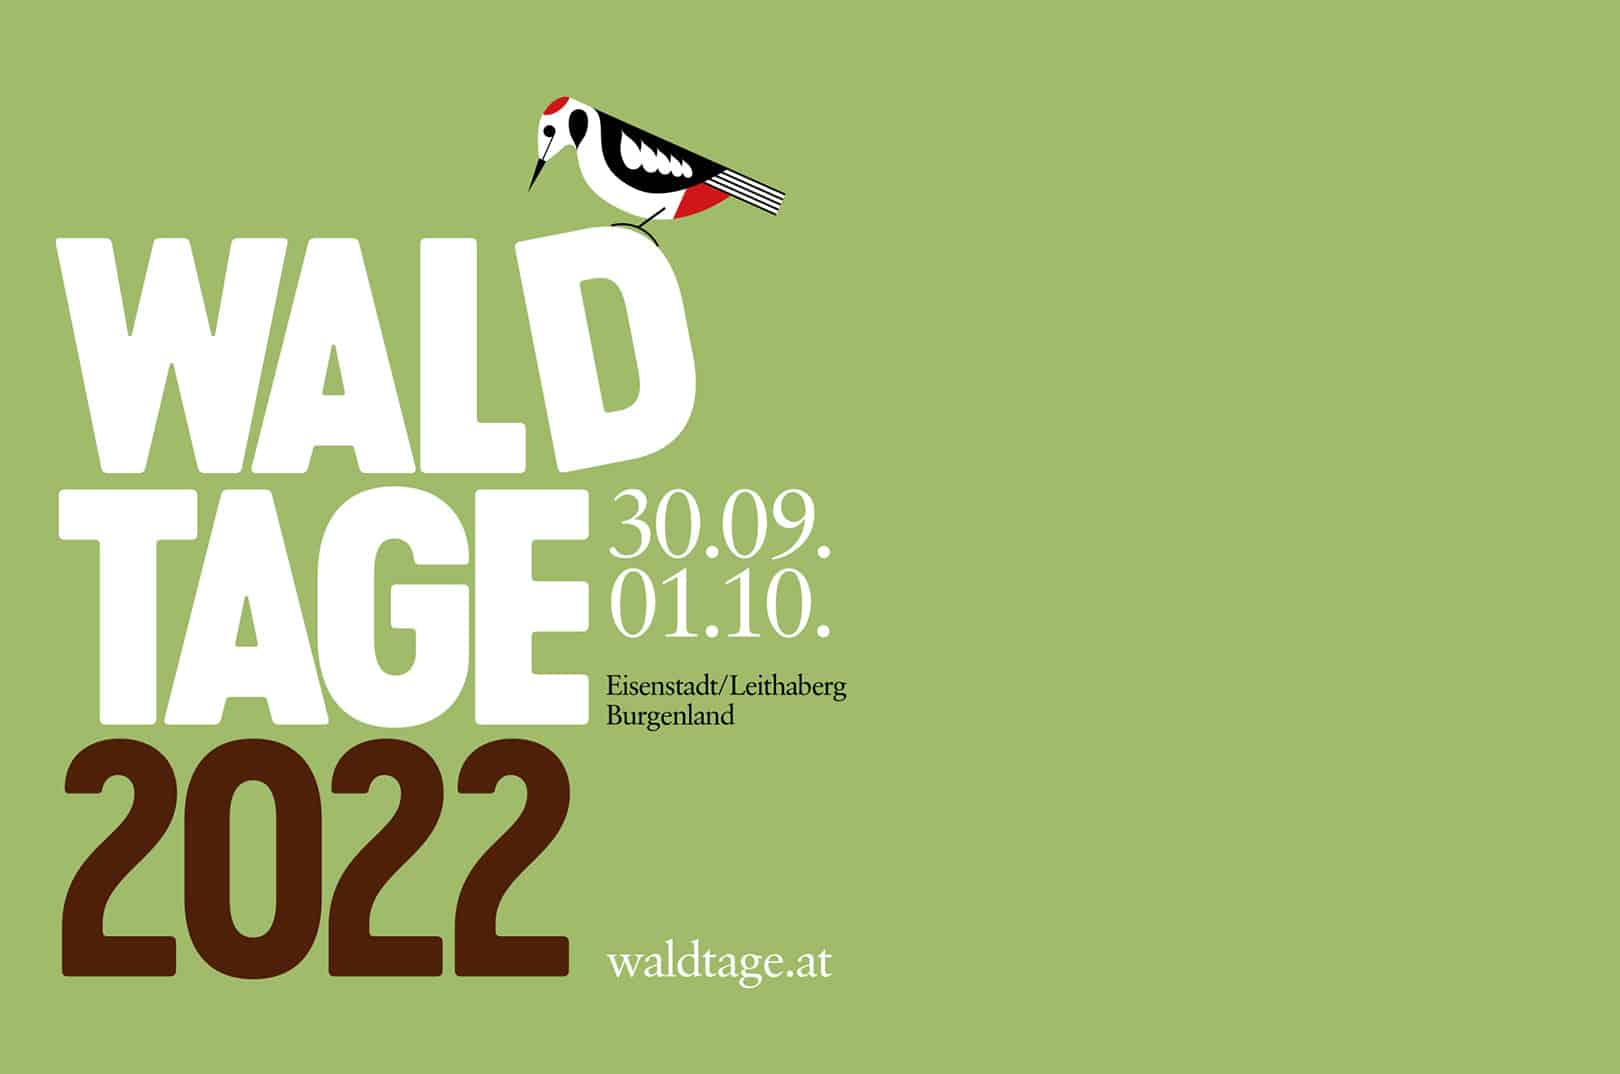 waldgeschichten-waldtage-2022-logo